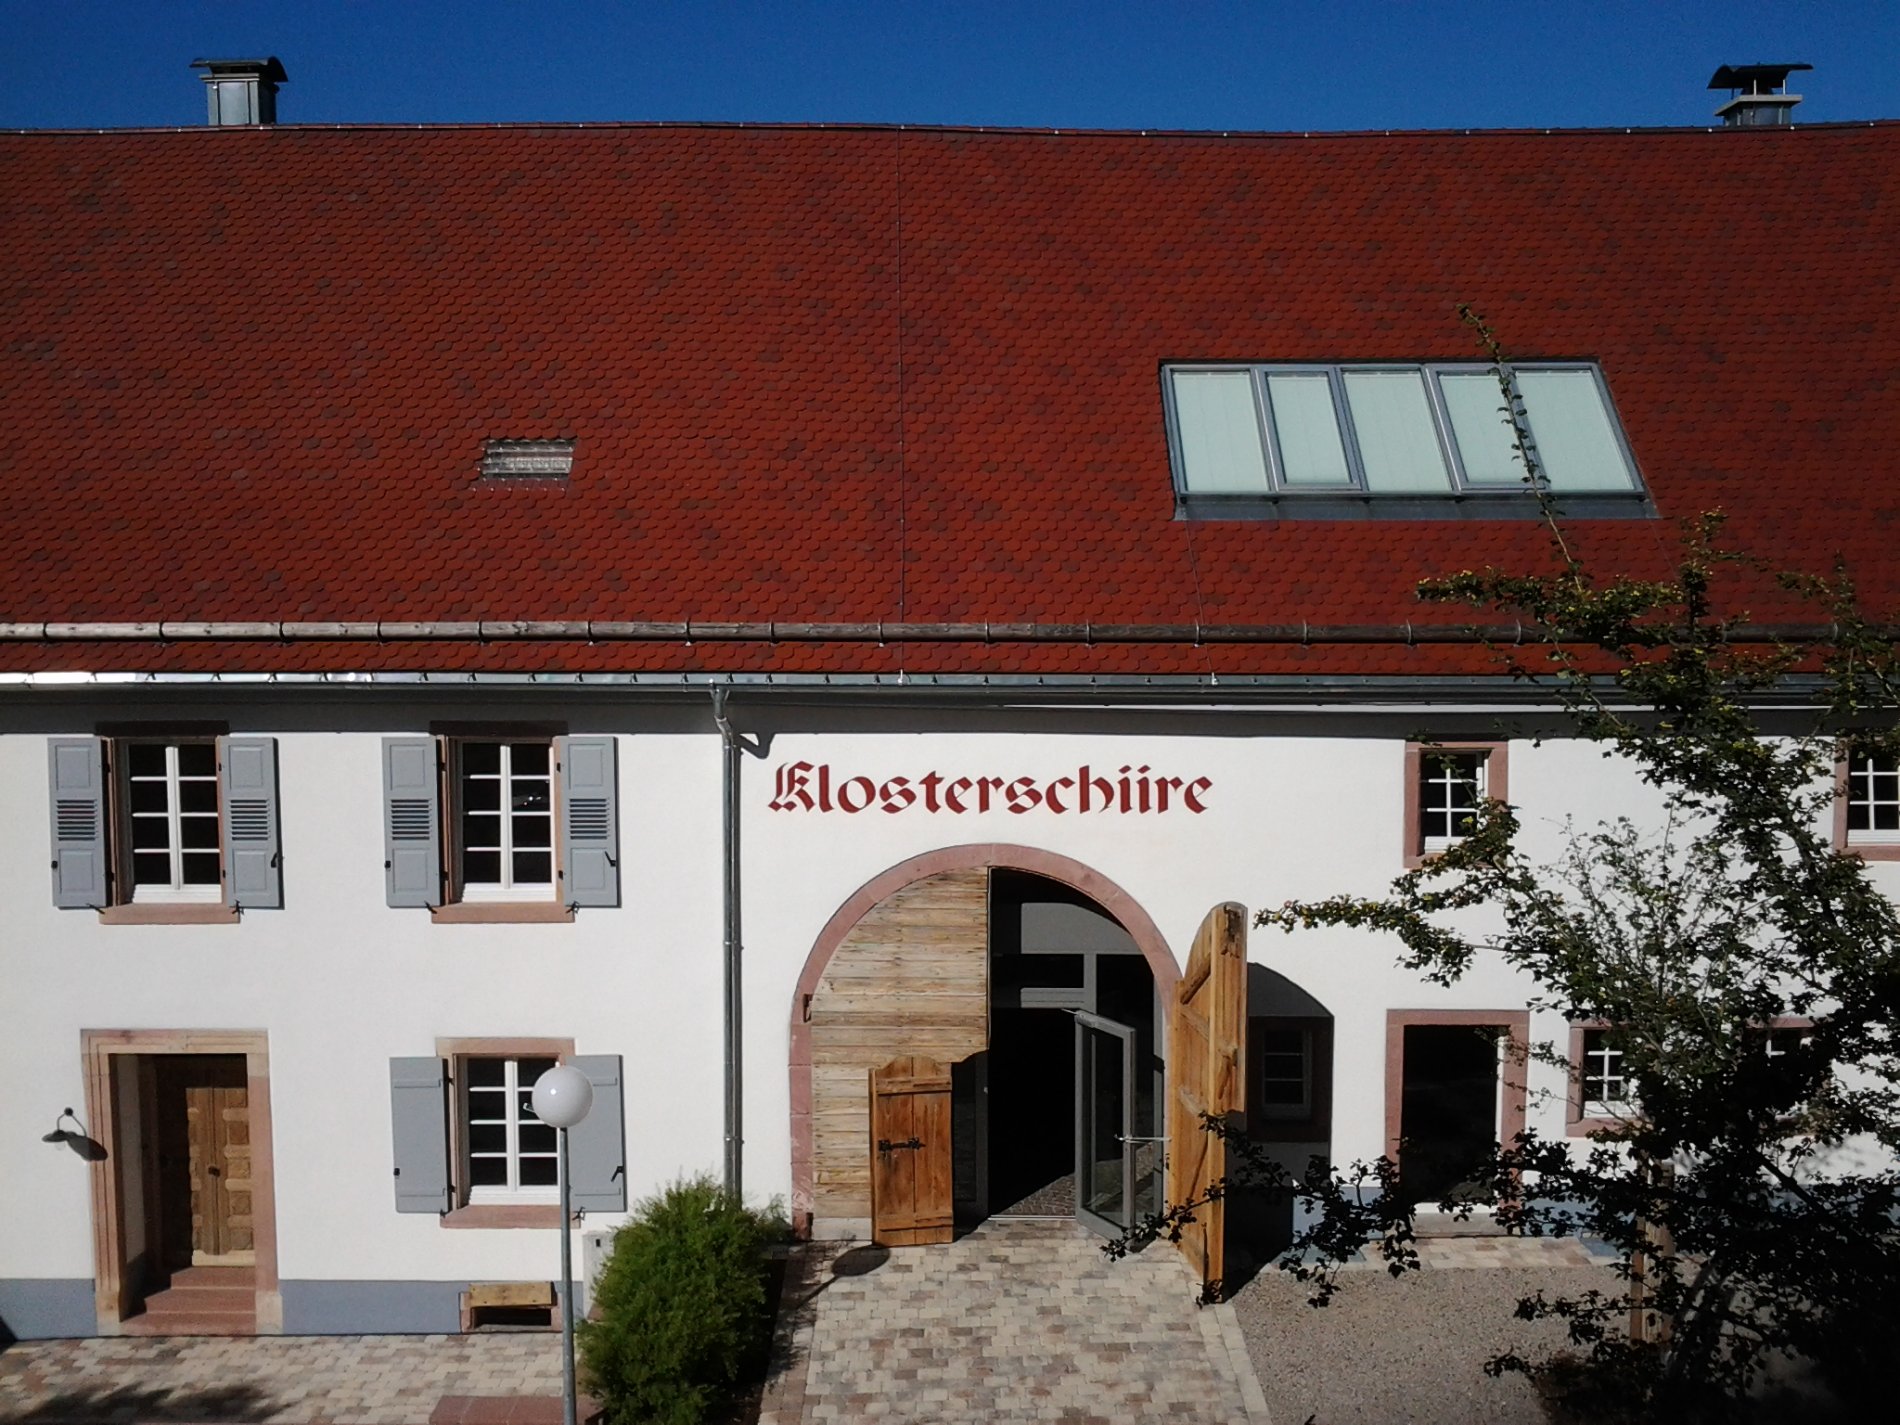 Klosterscheune Oberried